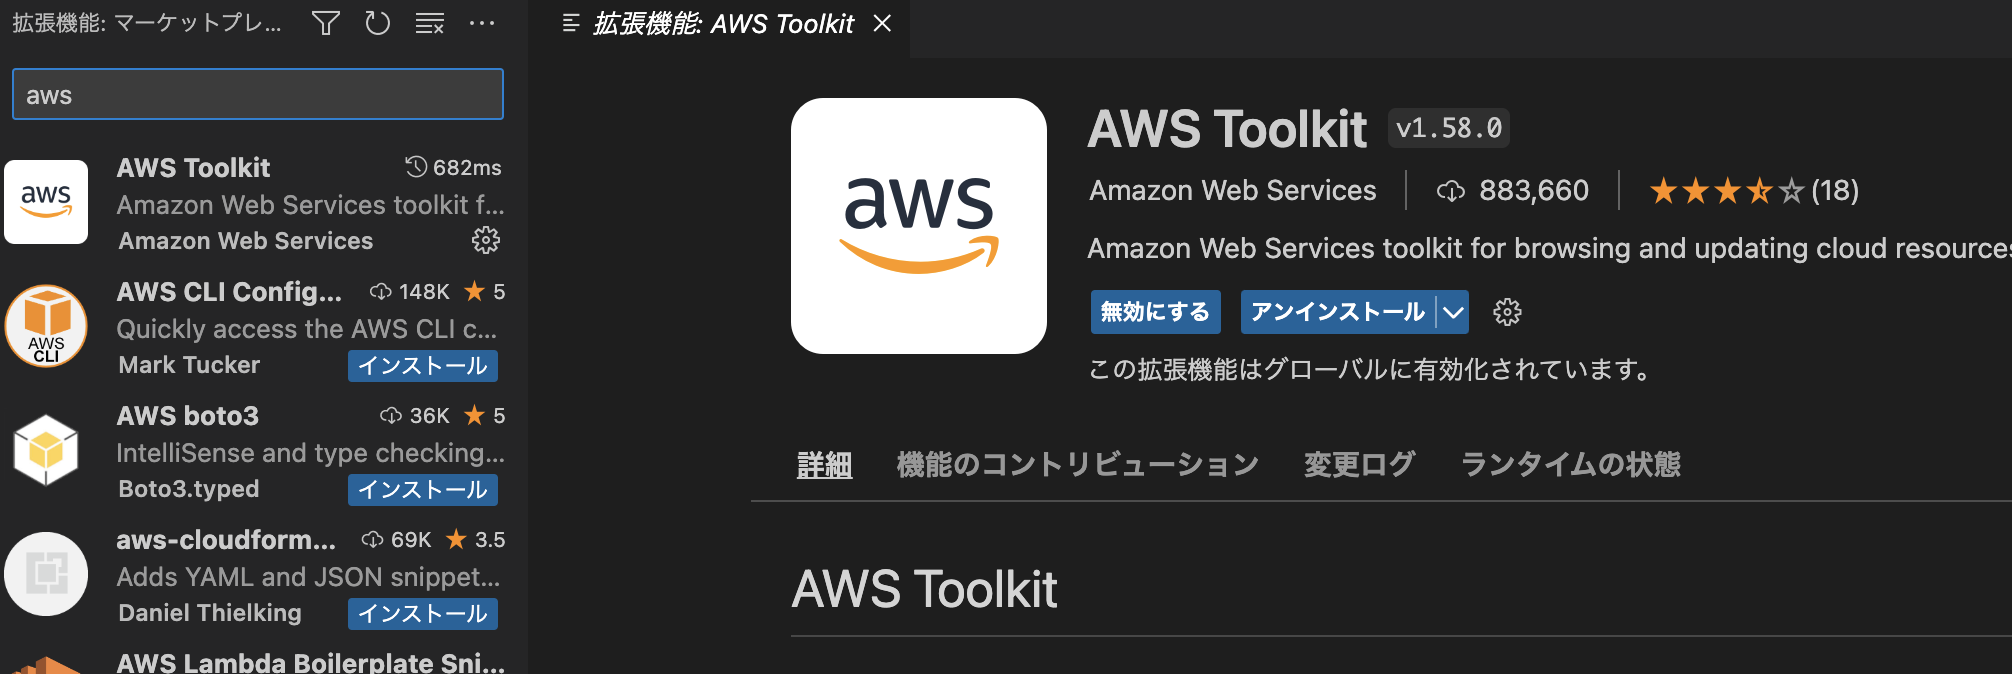 AWS Toolkit